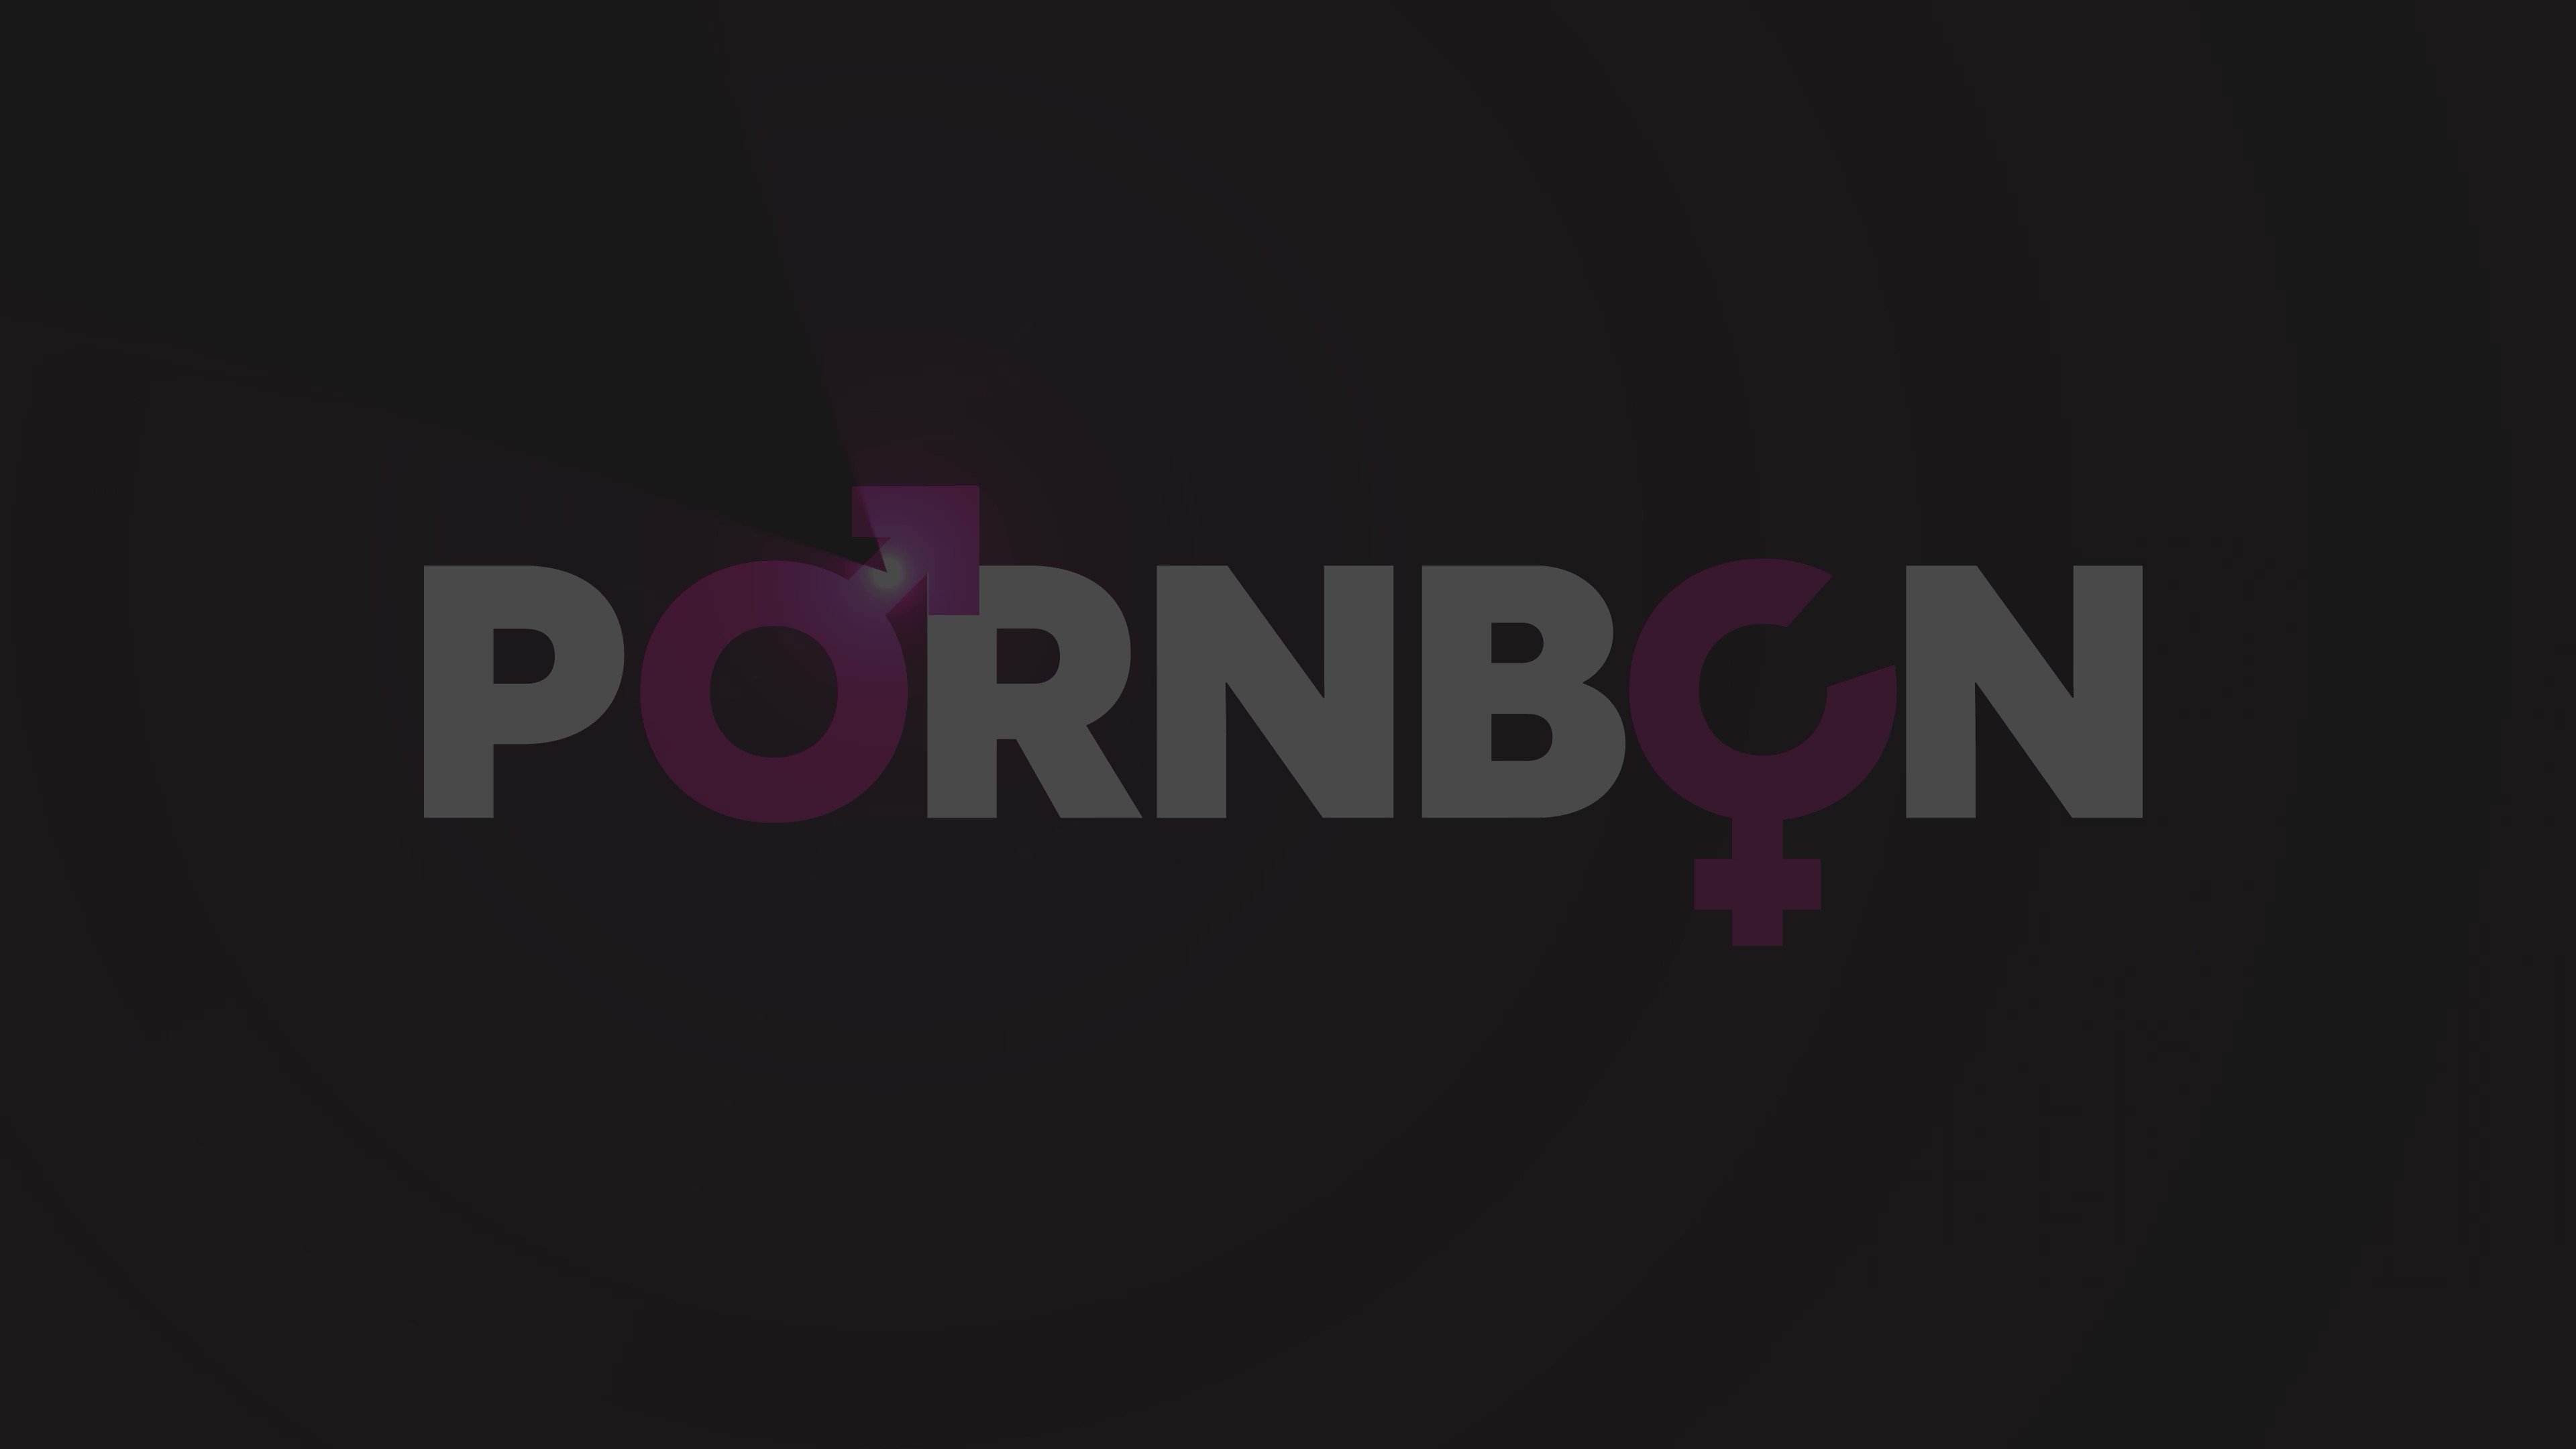 PORNBCN (@pornbcn) / X